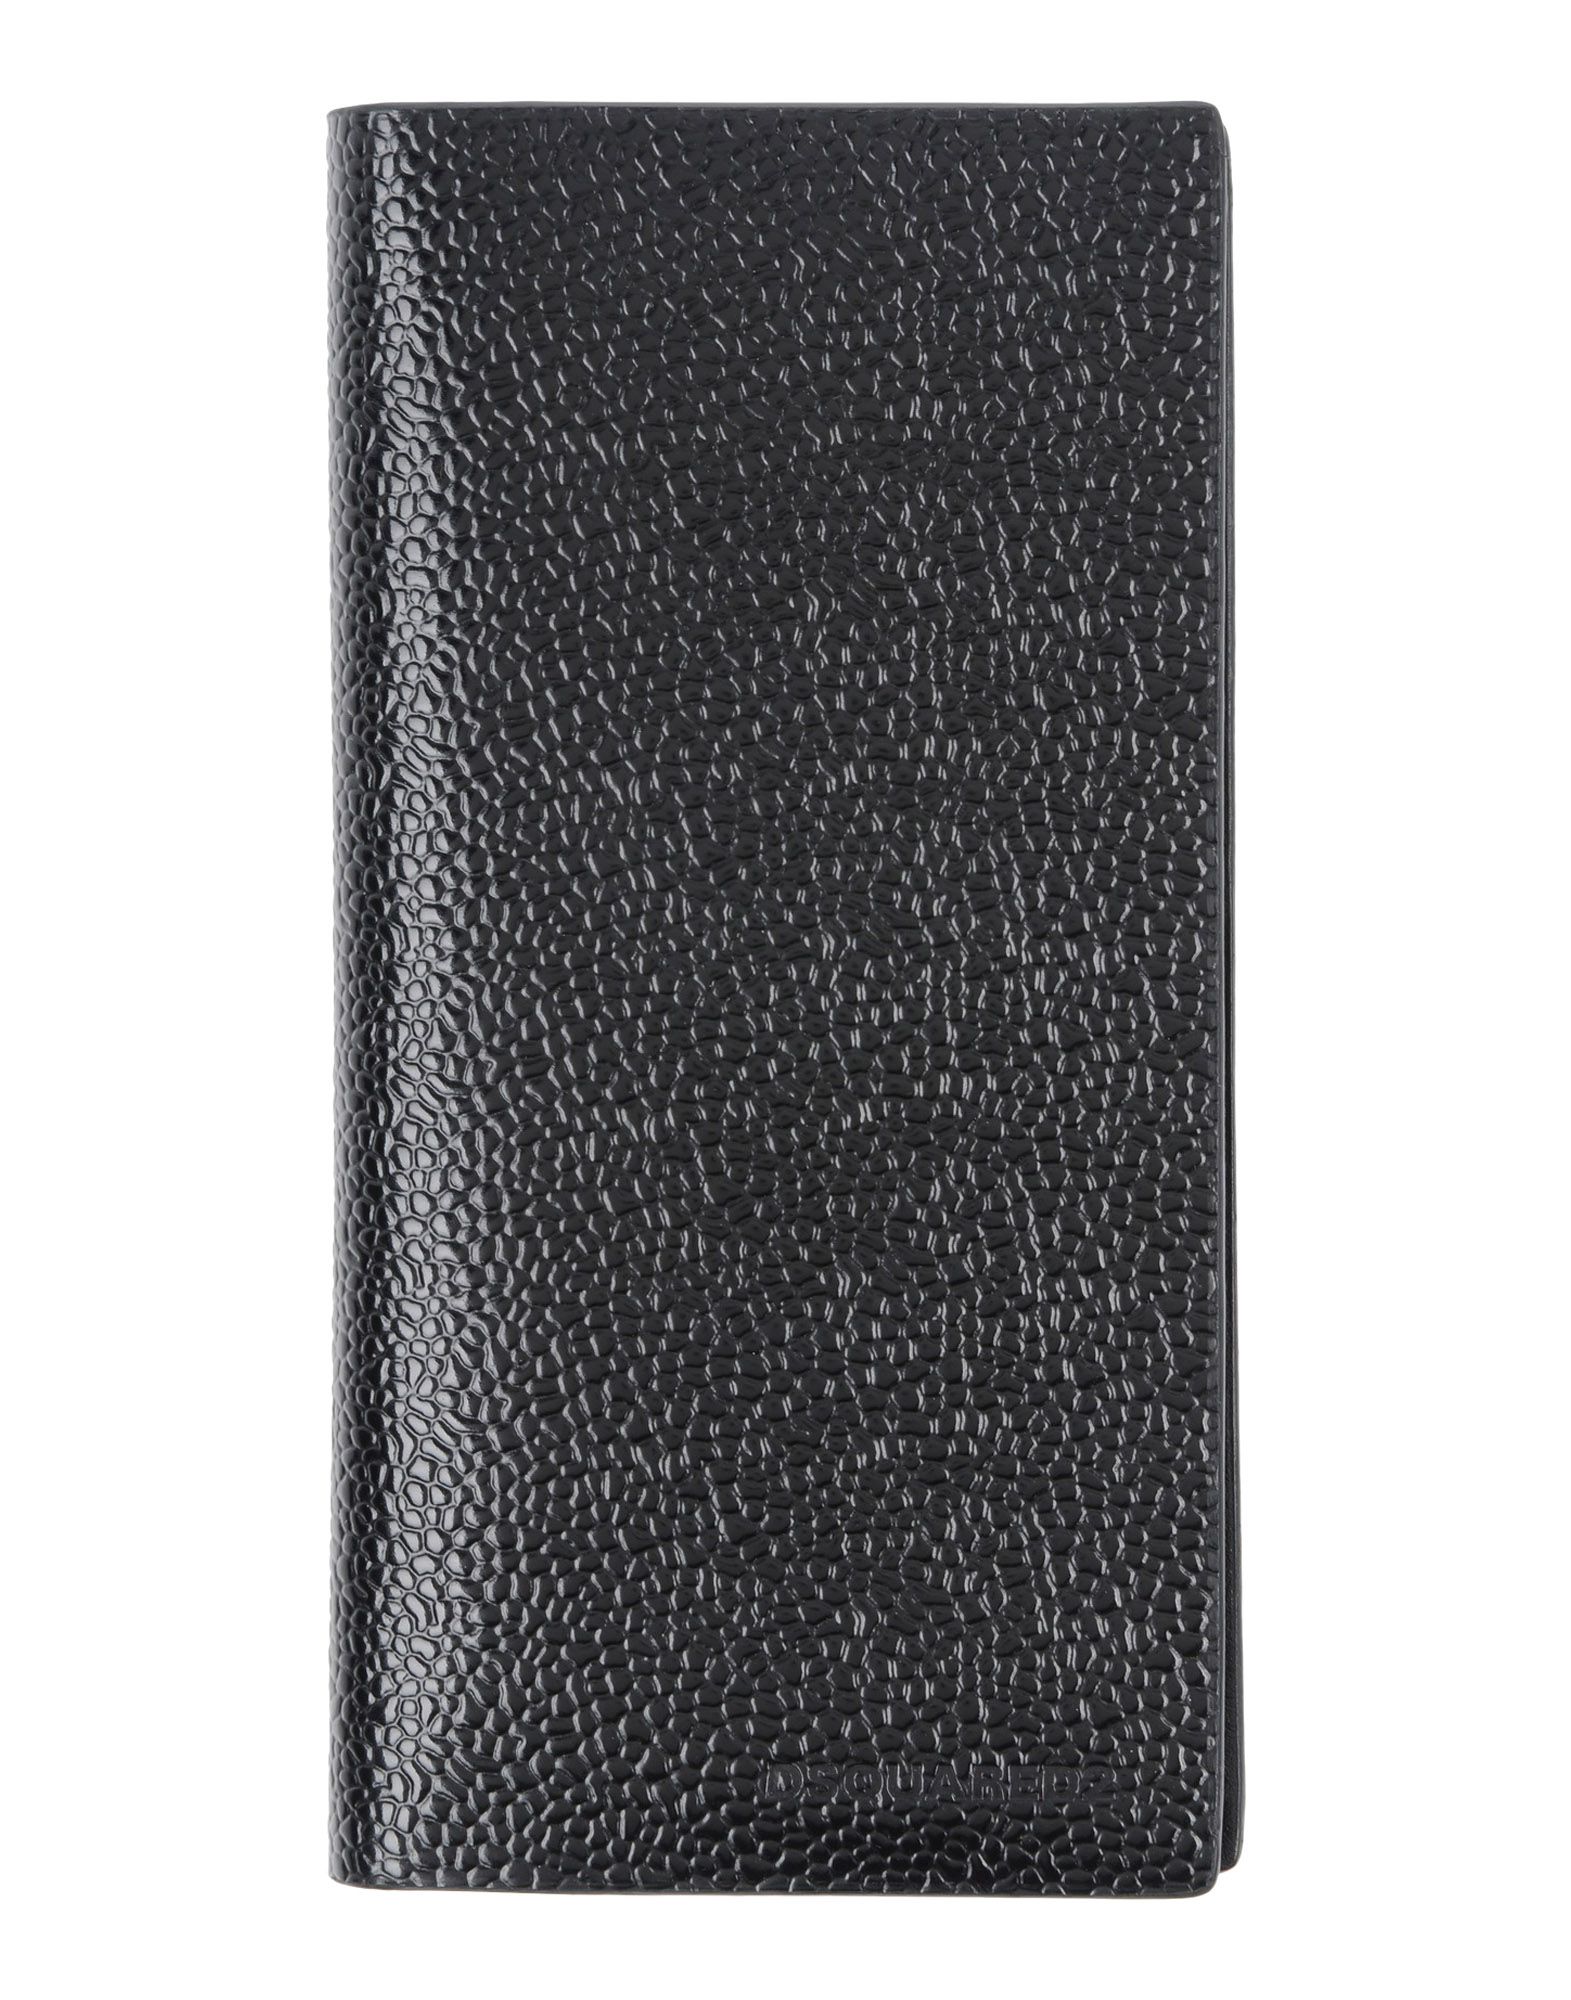 《送料無料》DSQUARED2 メンズ 財布 ブラック 革